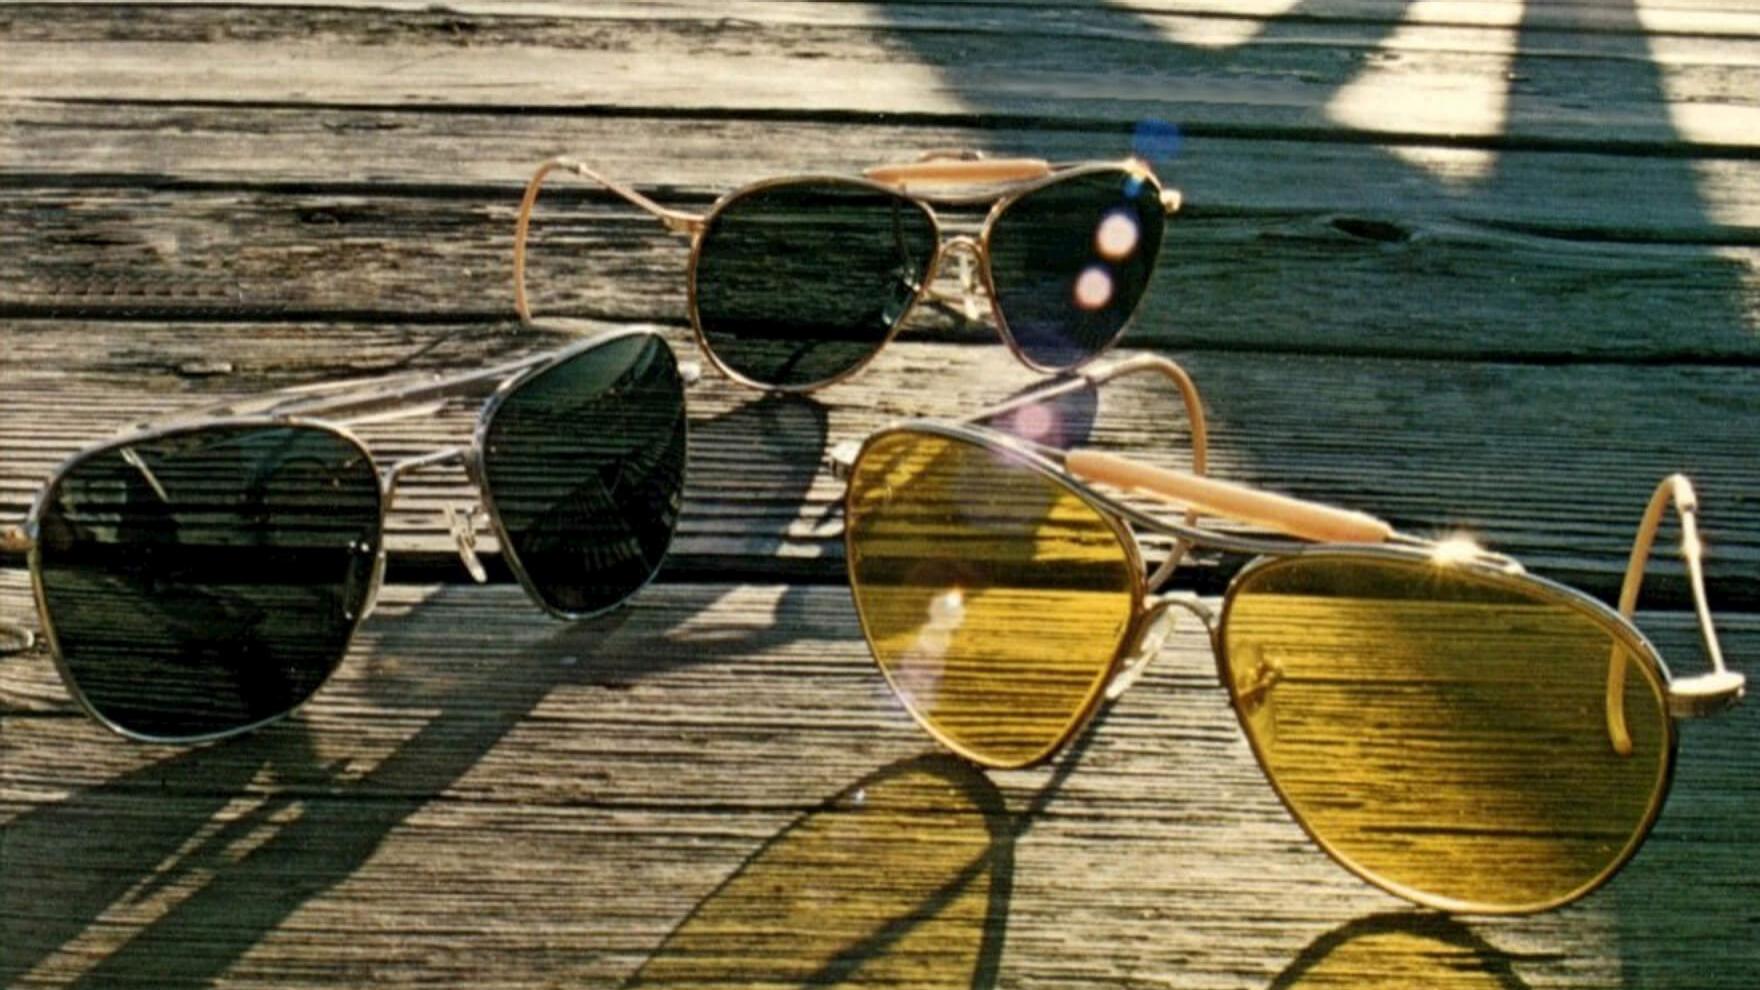 Década de 1980: entre "Ases Indomáveis" e os óculos de sol excêntricos da década